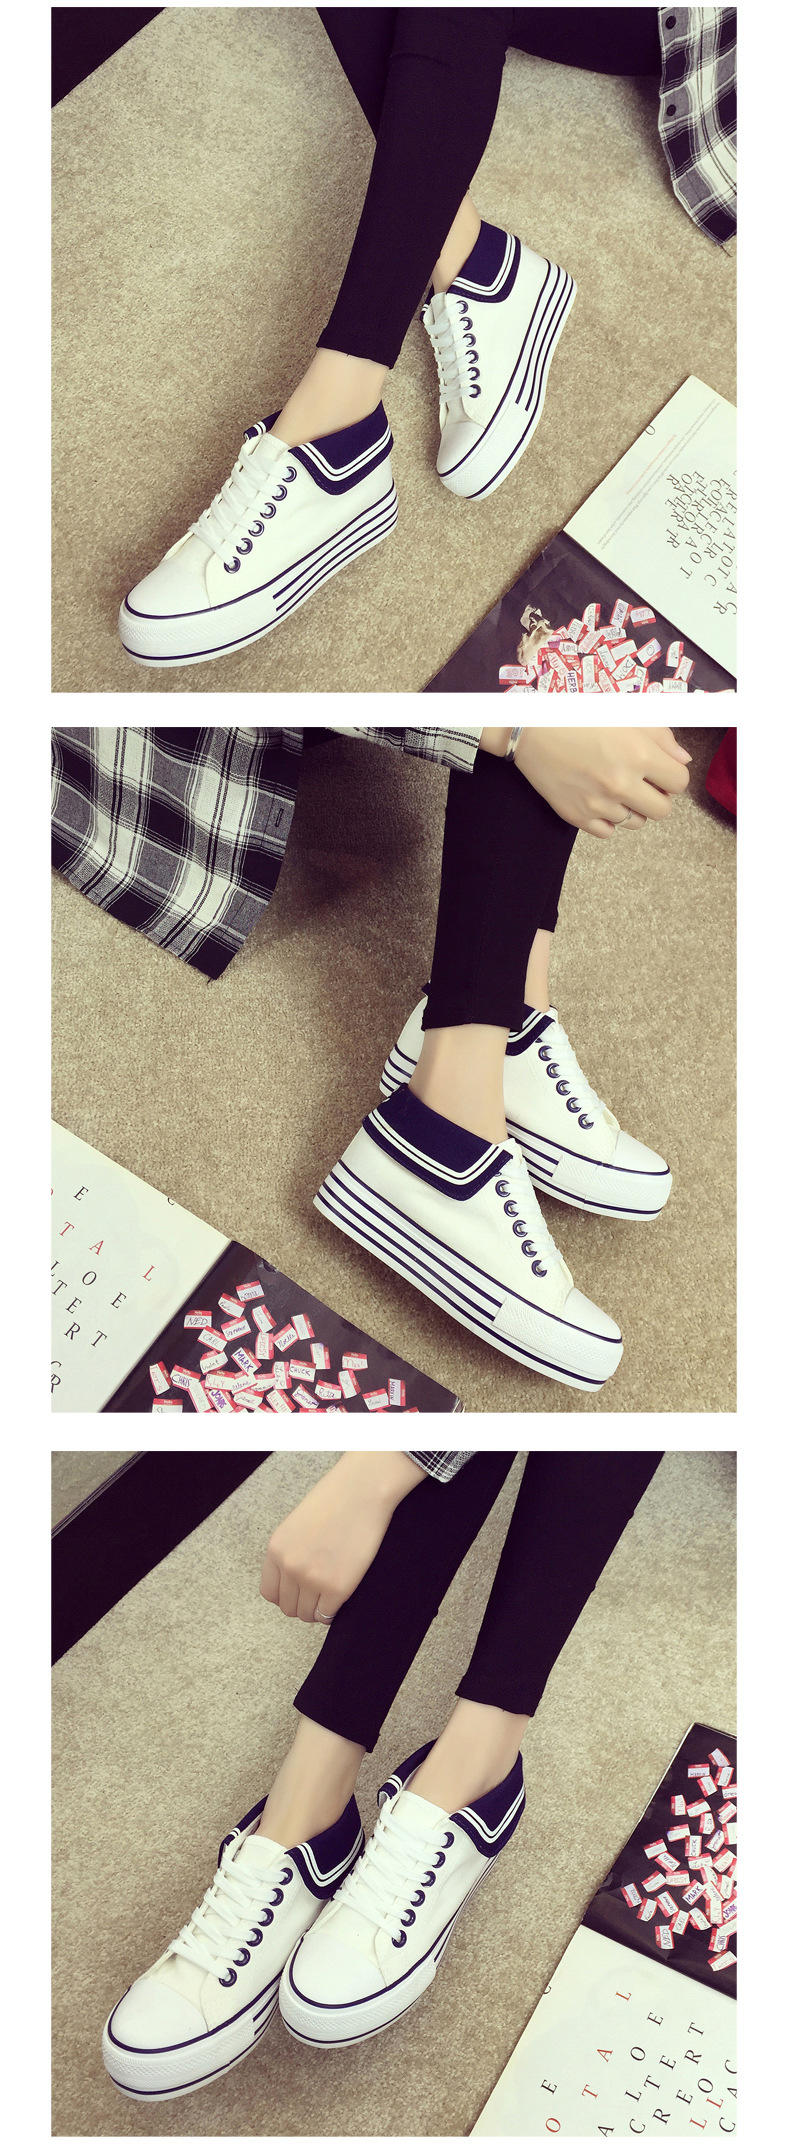 2016新款韩版帆布鞋女内增高低帮系带女式布鞋单鞋学生松糕休闲鞋